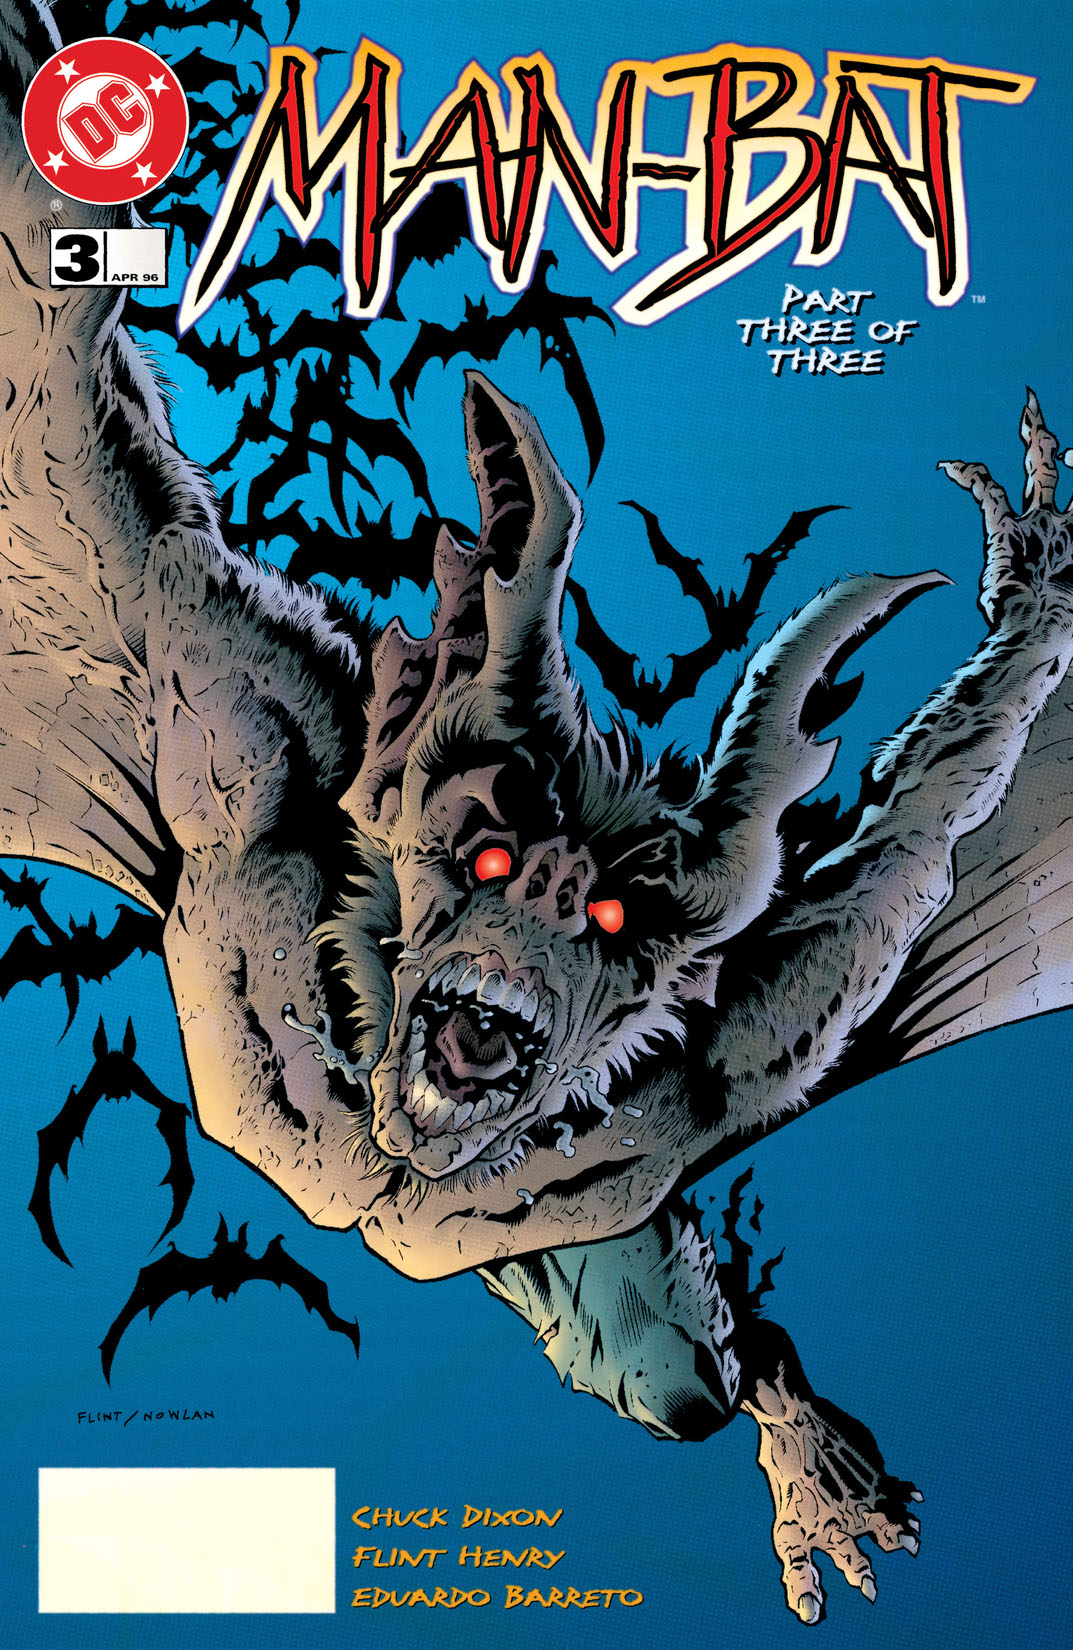 Man-Bat (1996-) #3 preview images